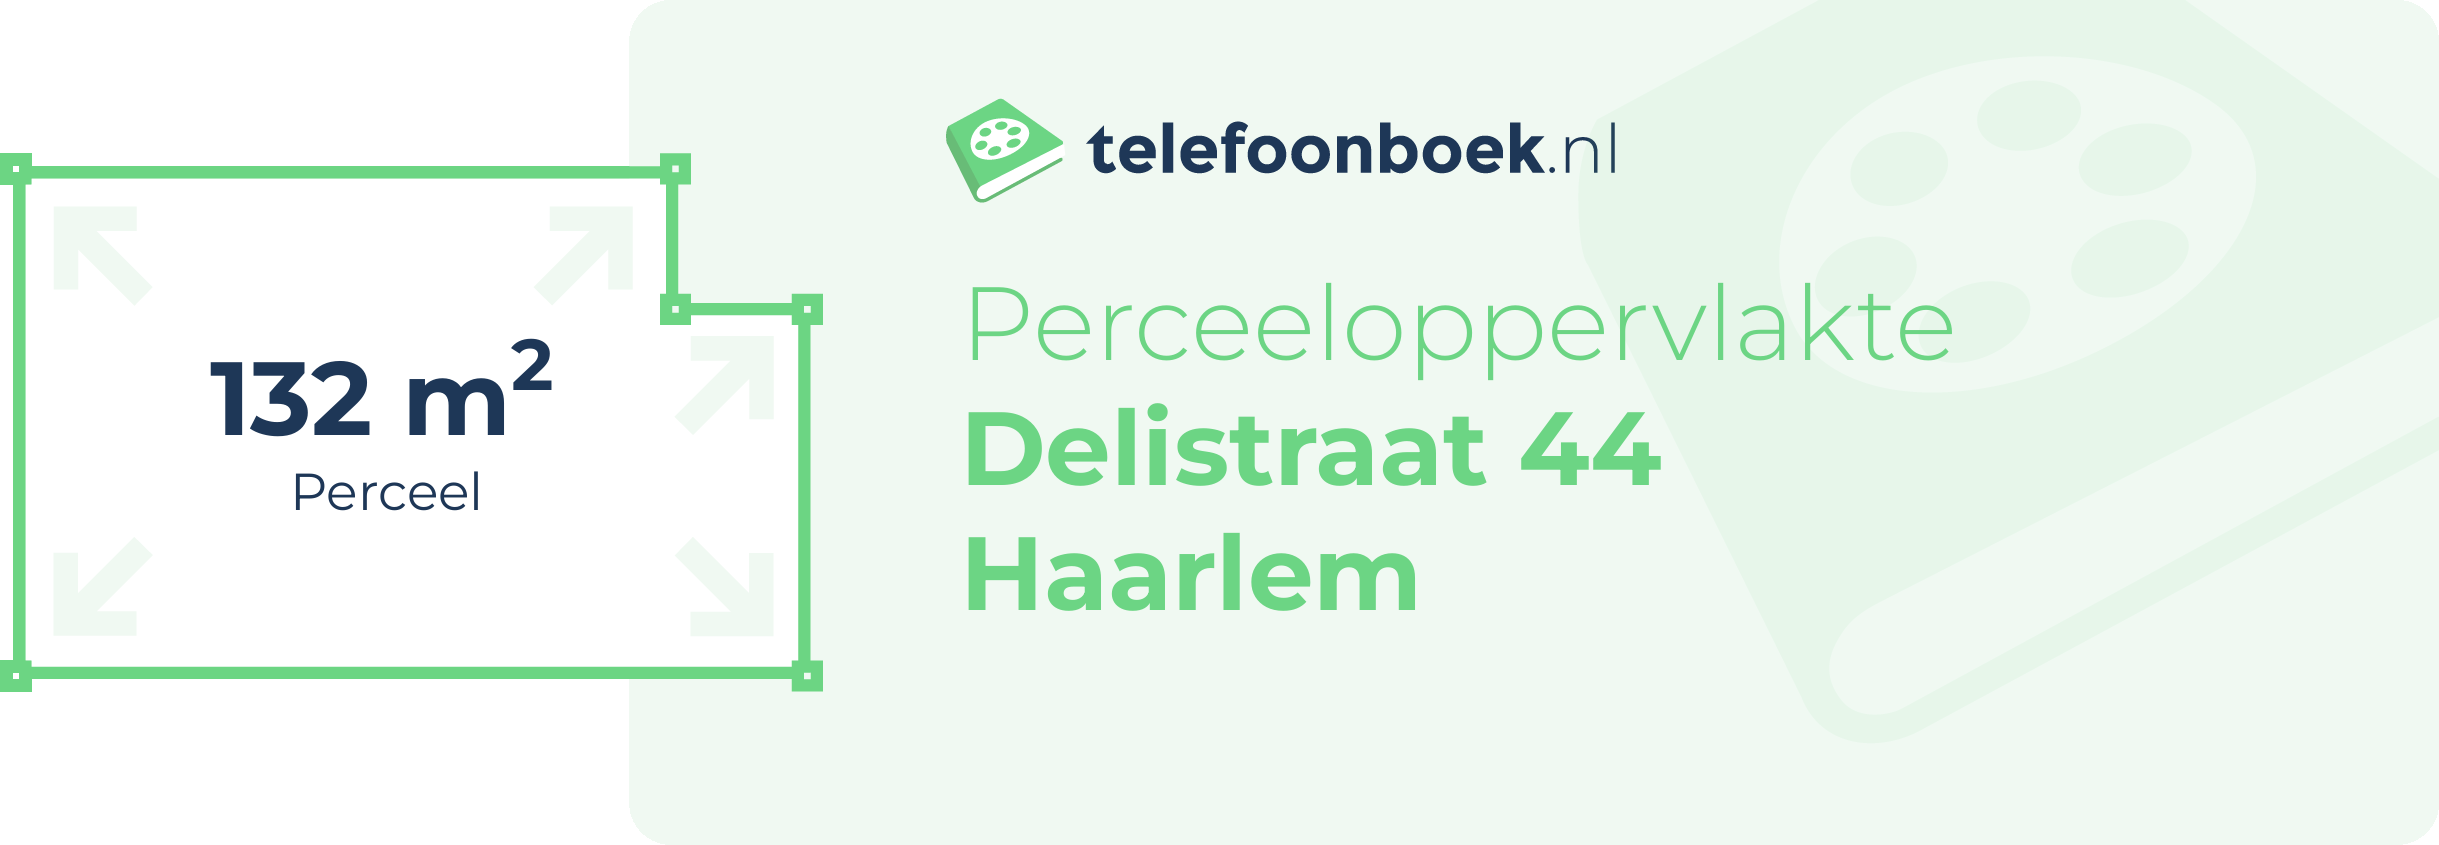 Perceeloppervlakte Delistraat 44 Haarlem